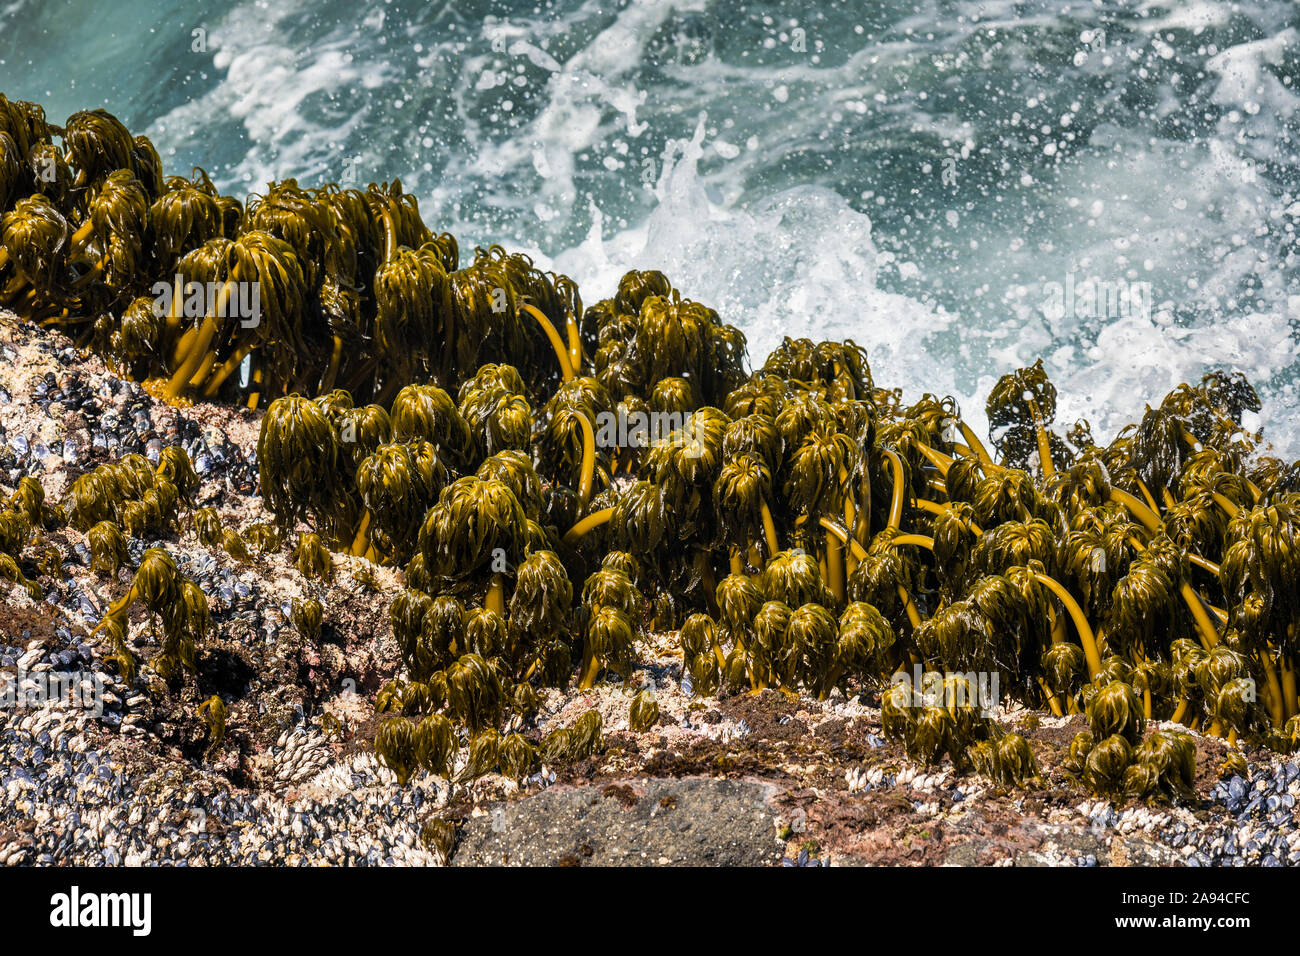 Palmiers marins (Postelsia palmaeformis) S'accrocher aux rochers dans le surf à Rocky Creek State Scenic Viewpoint sur la côte de l'Oregon Banque D'Images